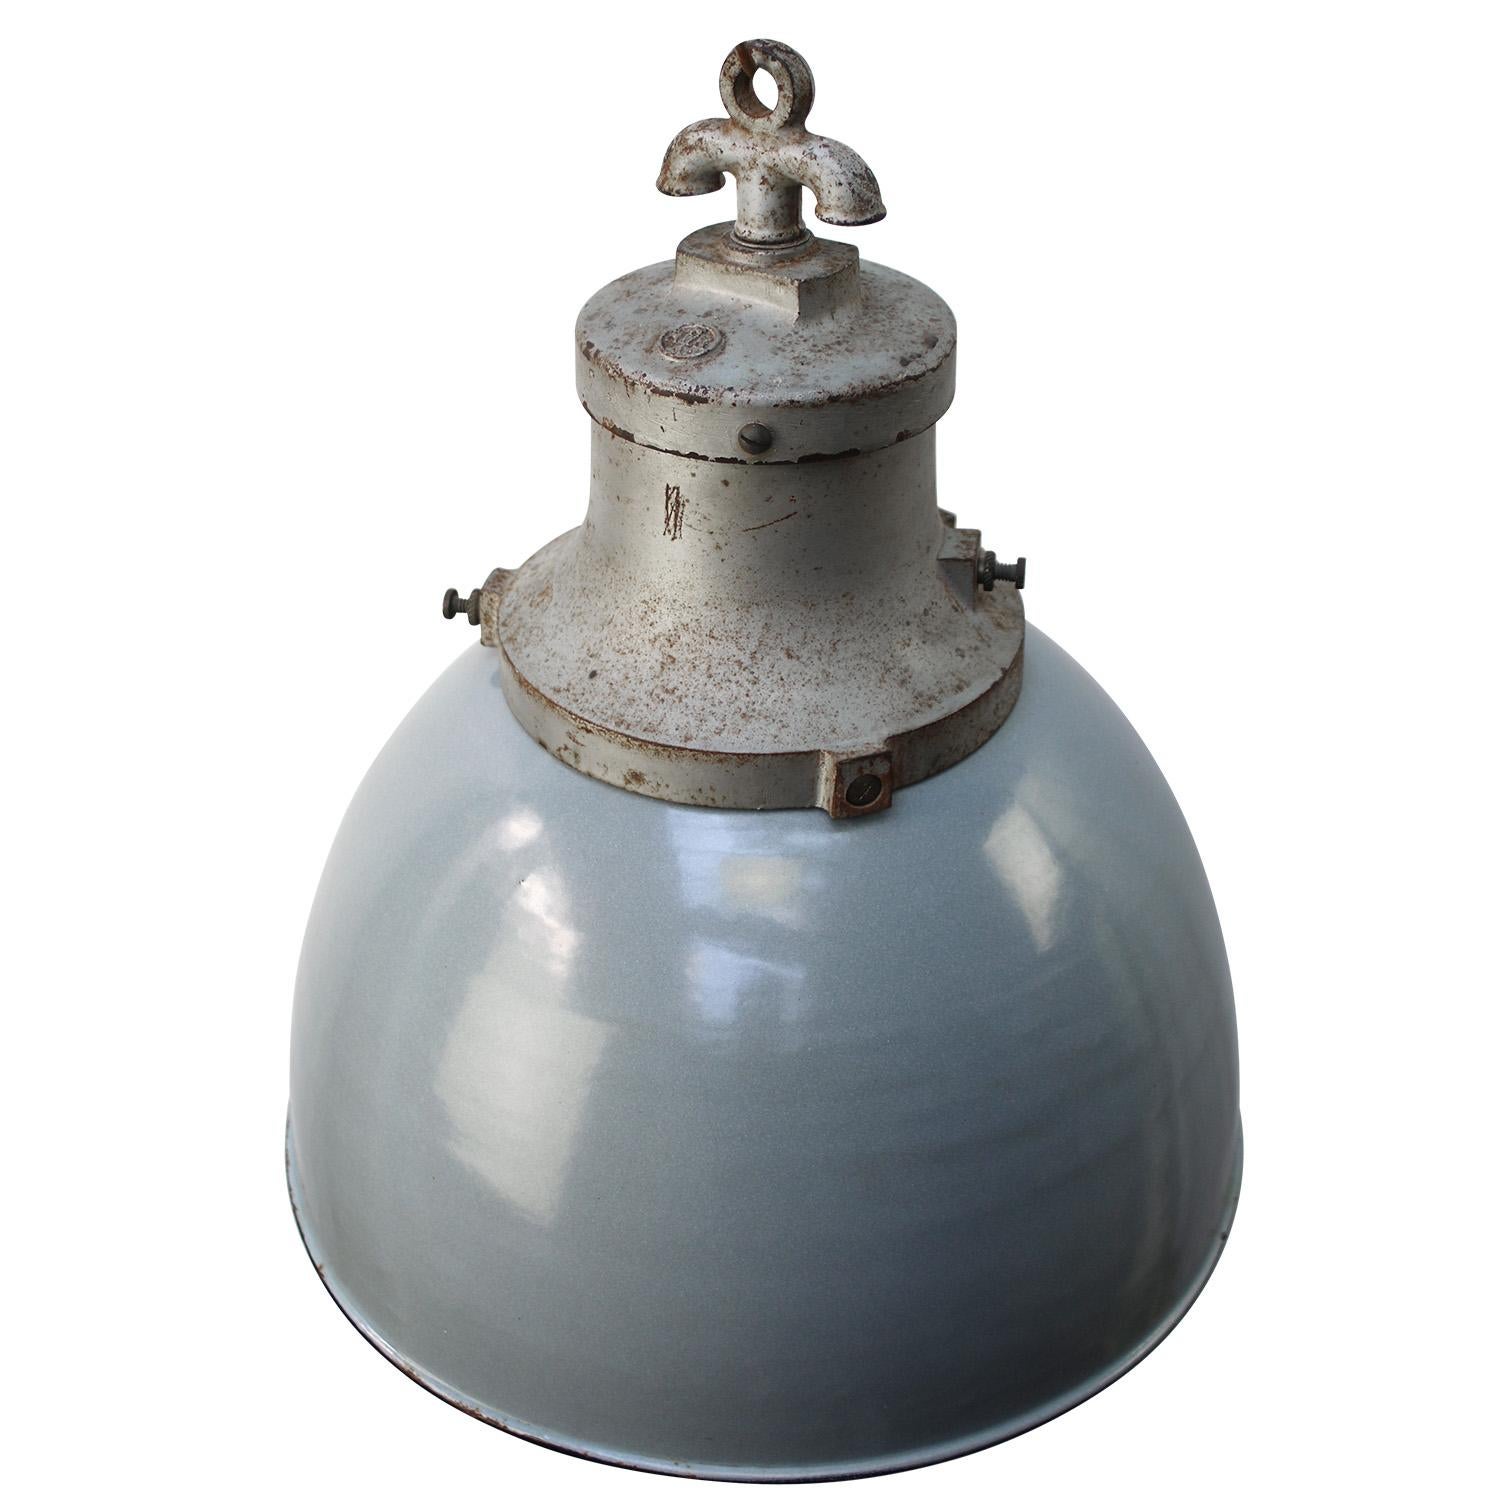 Seltene und alte Fabriklampe von HWK
Graue Emaille mit grauer Gusseisenplatte
Weißes Interieur

Gewicht: 5,40 kg / 11,9 lb

Der Preis gilt für jeden einzelnen Artikel. Alle Lampen sind nach internationalen Normen für Glühbirnen, energieeffiziente